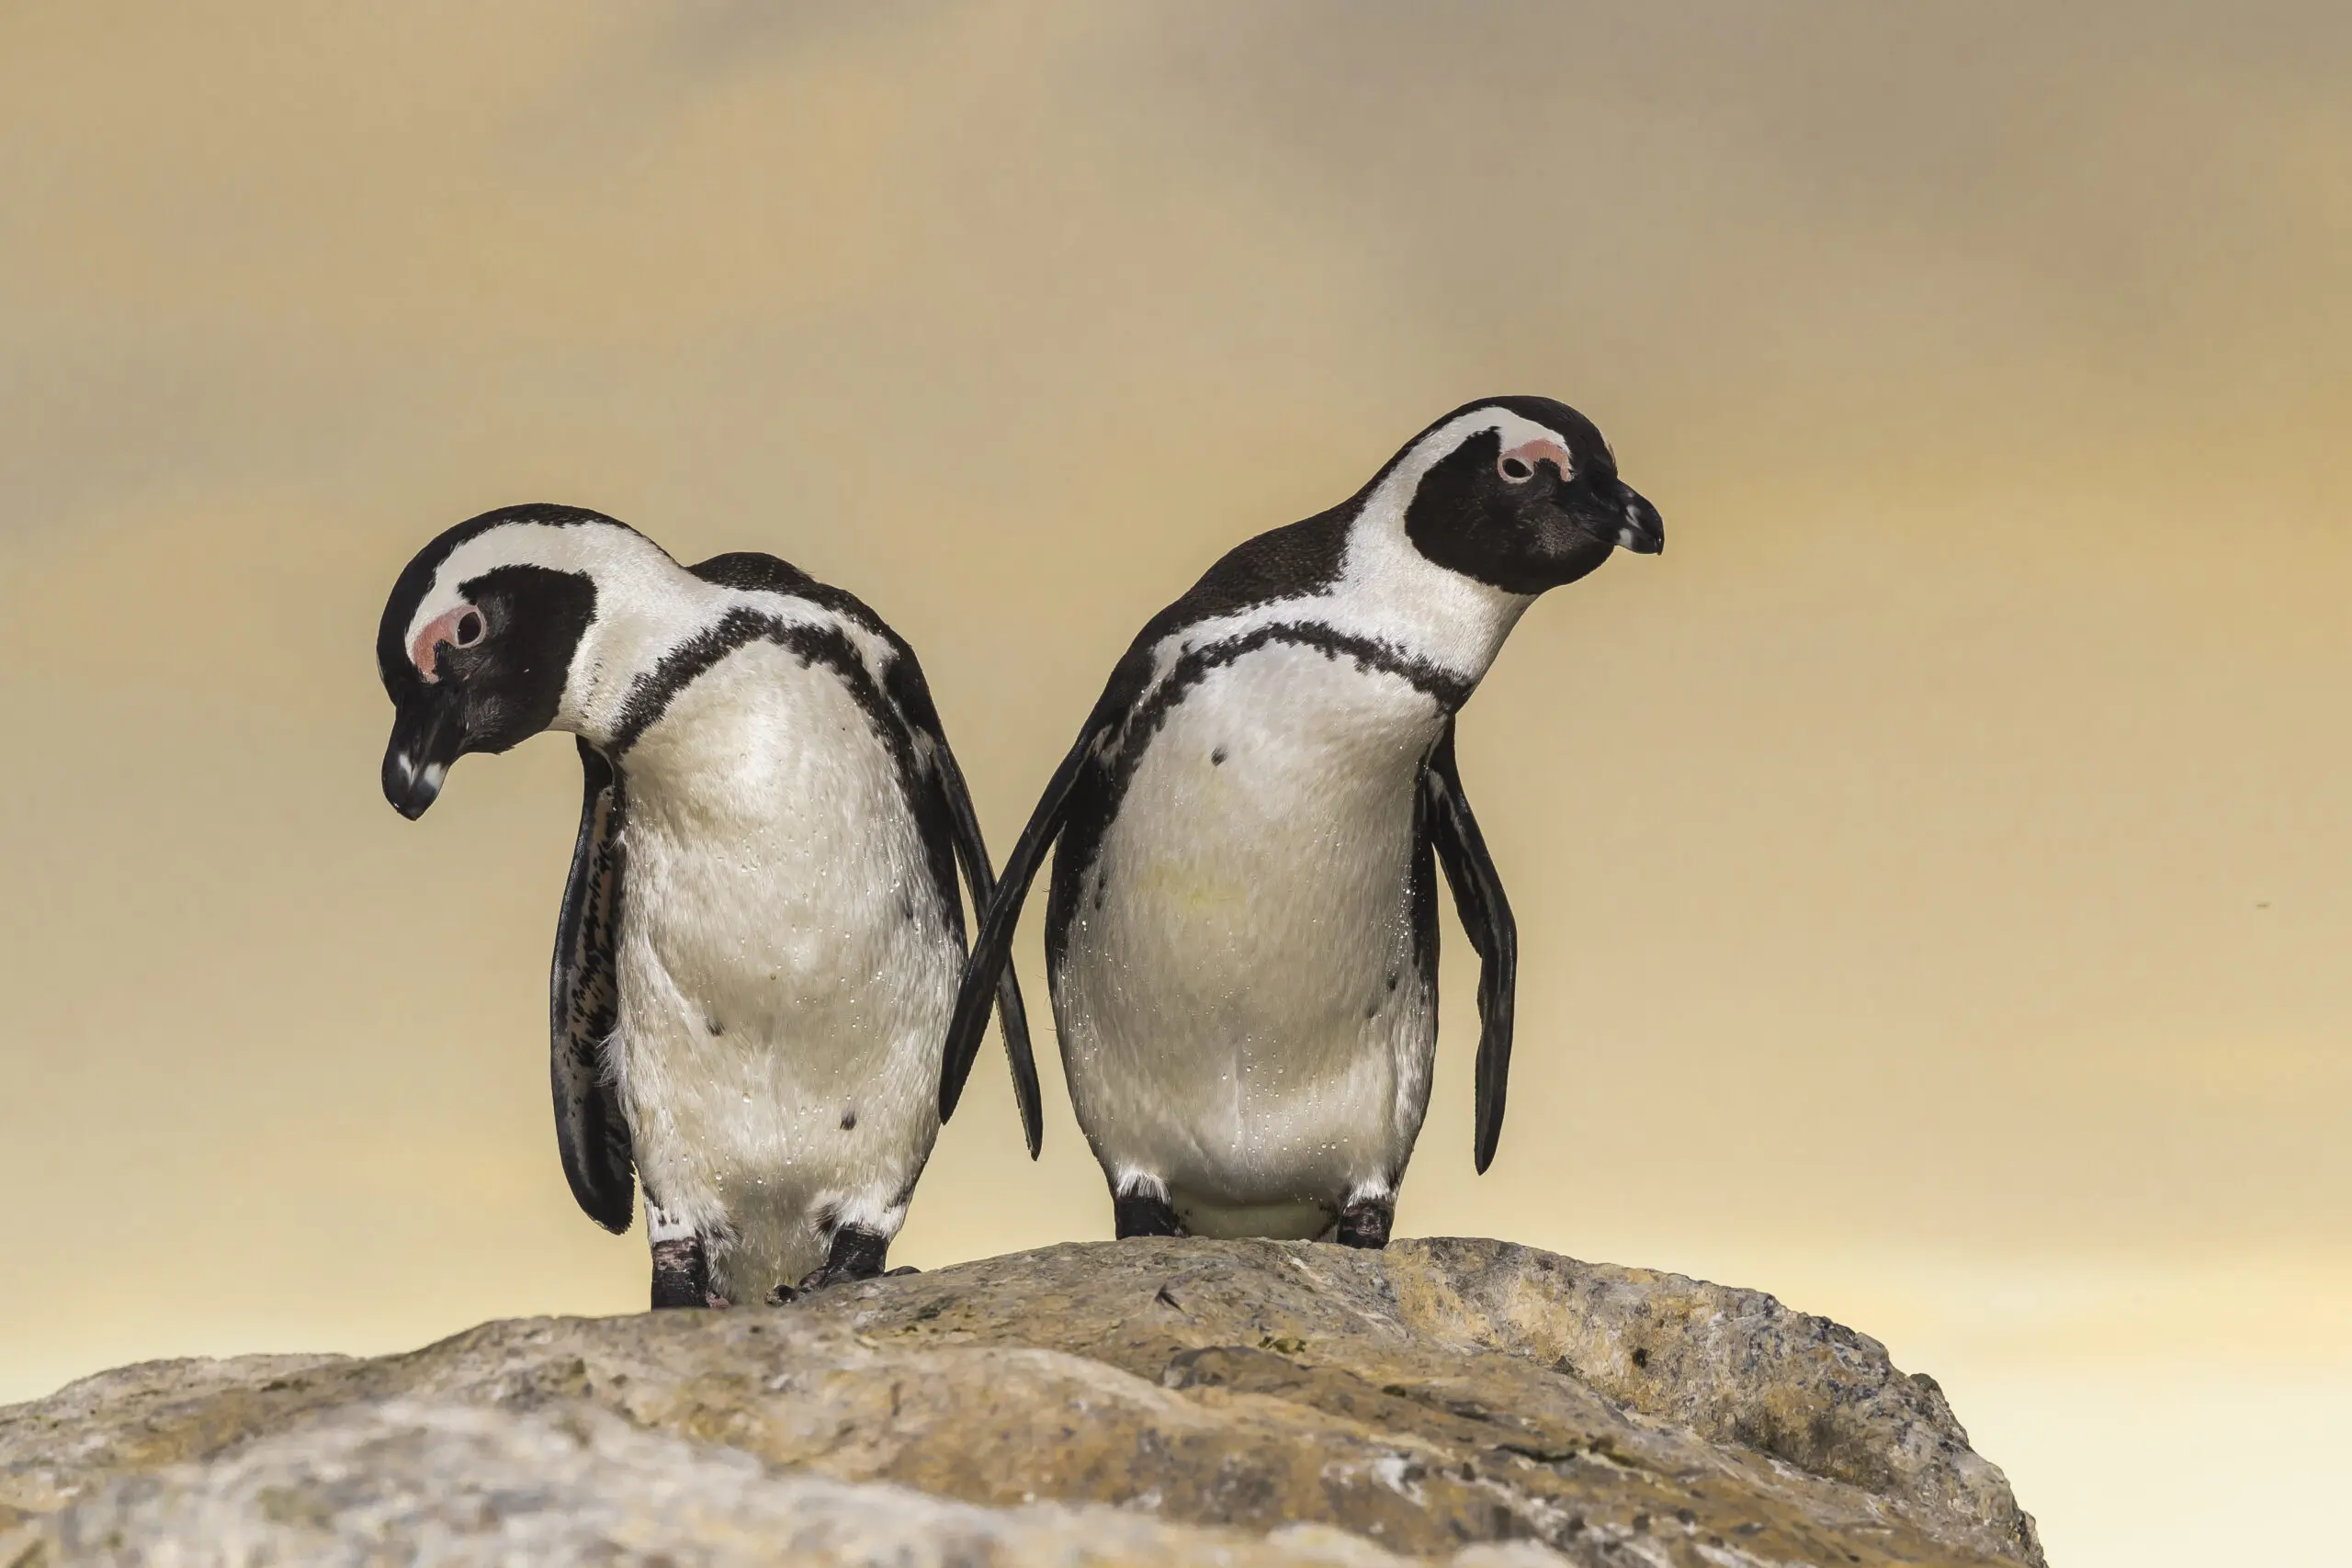 Wandbild (4732) Pinguin präsentiert: Tiere,Natur,Pinguine,Vögel,Aus Afrika